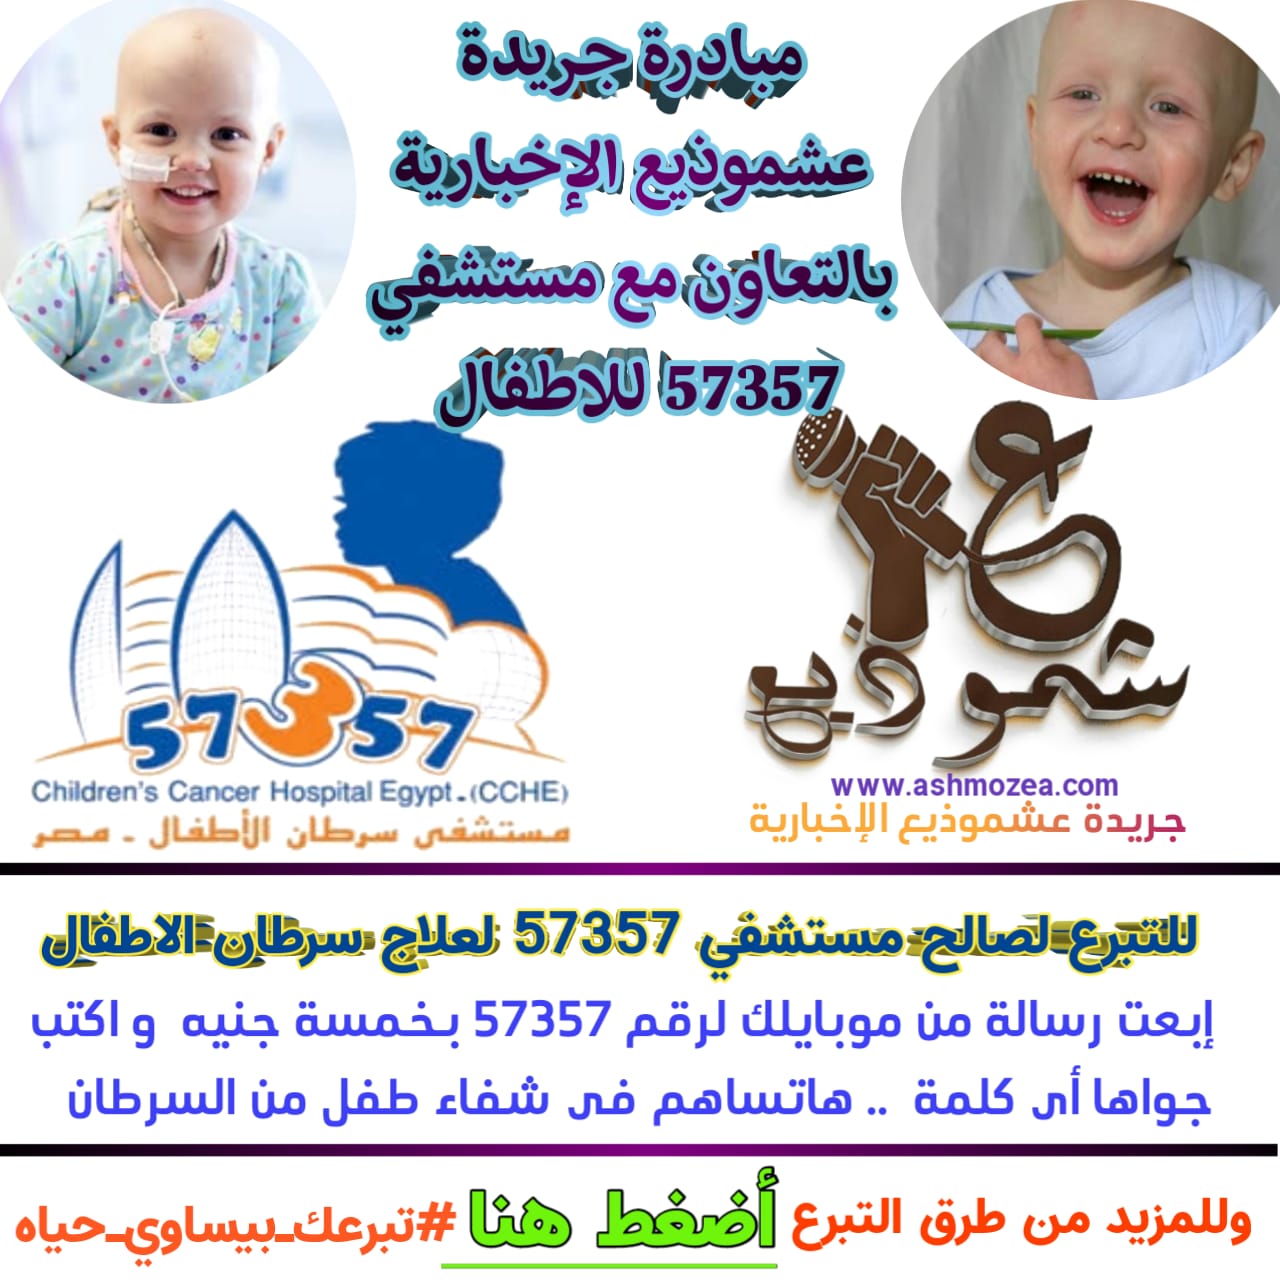 مبادرة جريدة عشموذيع الإخبارية بالتعاون مع مستشفي 57357 لعلاج سرطان الاطفال